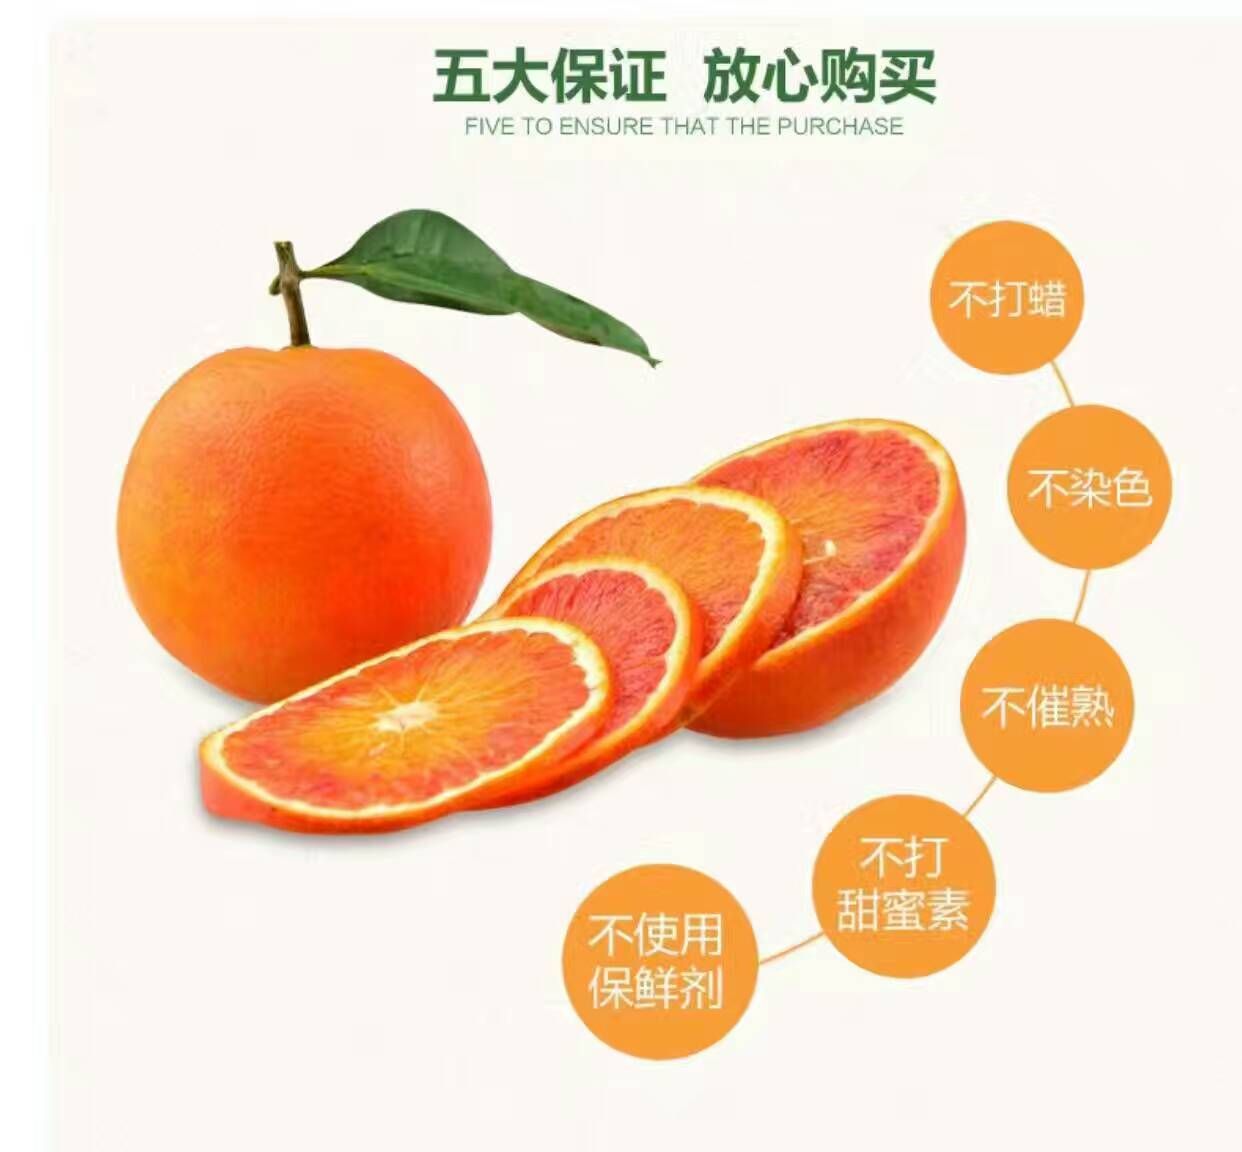 来自四川资中的塔罗科血橙是你值得信赖的产品